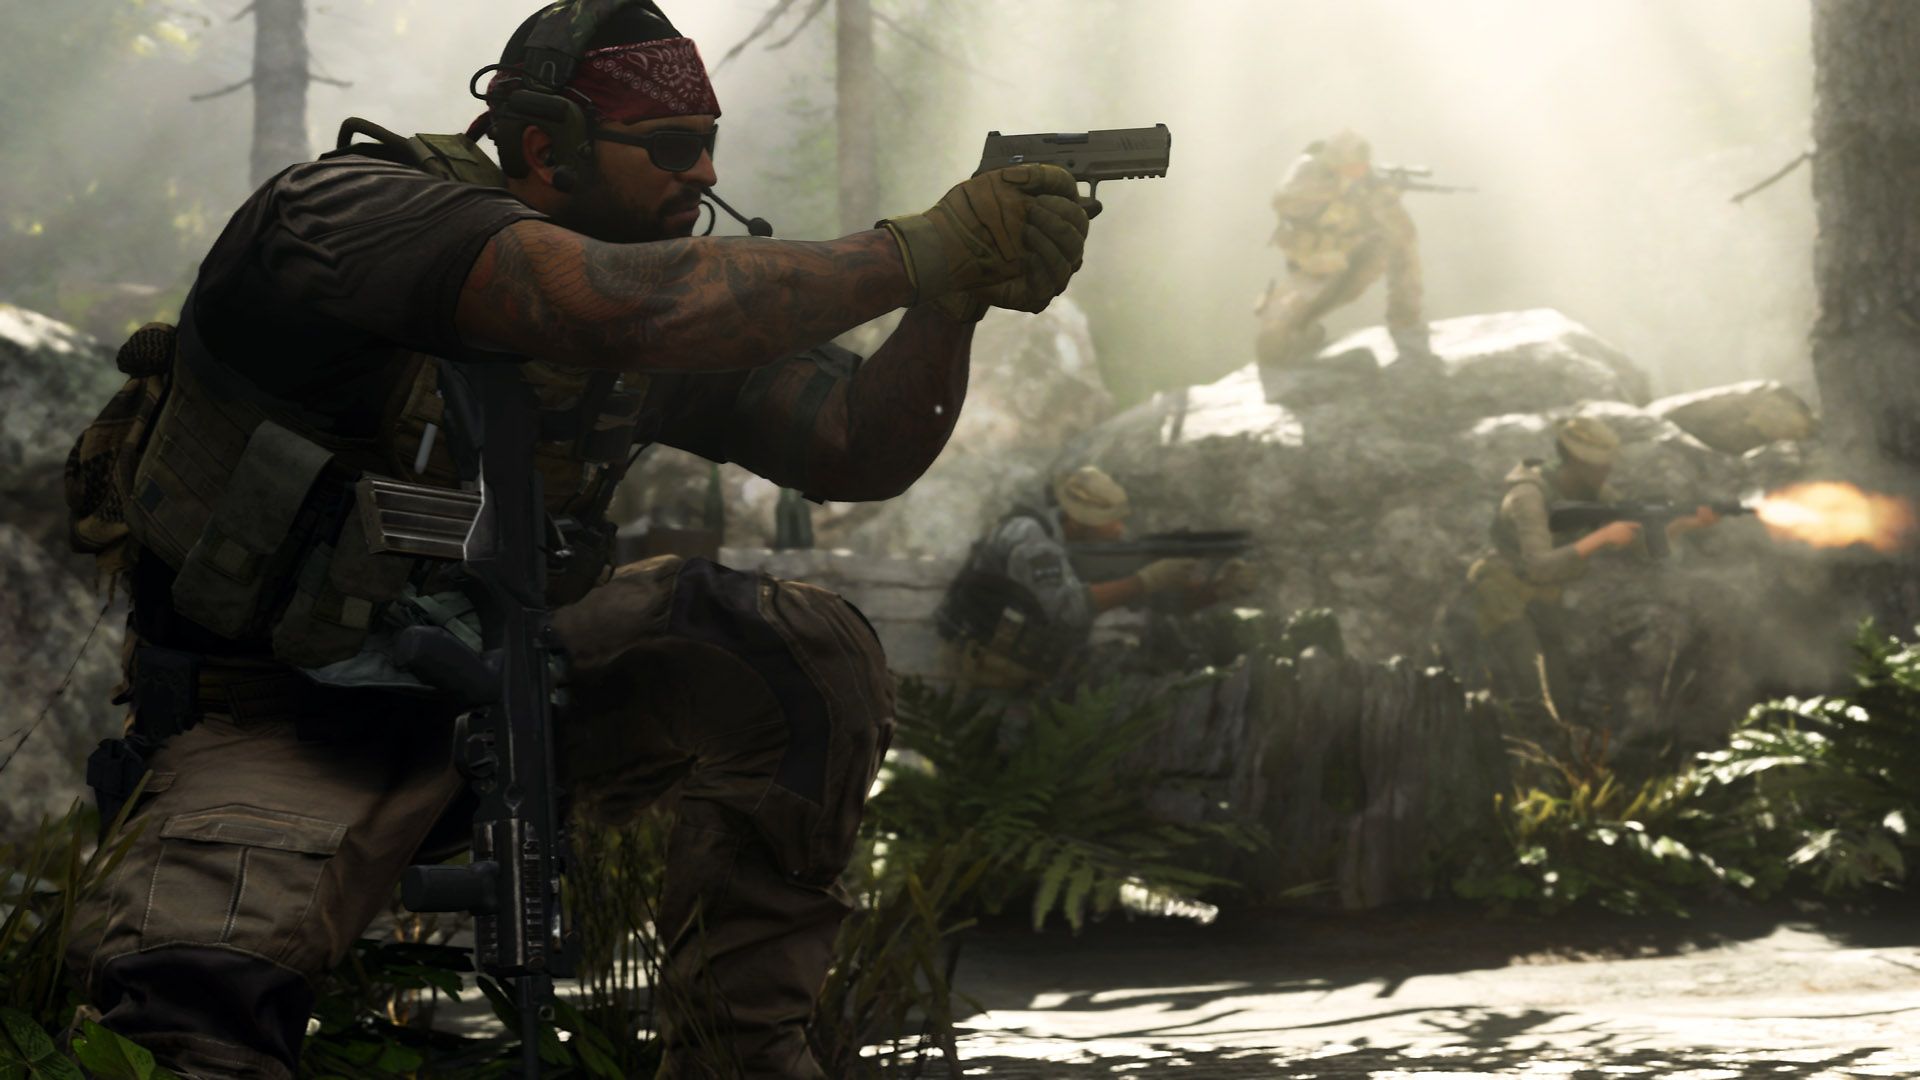 Call of Duty Modern Warfare (2019) soldier wielding a sidearm in the woods